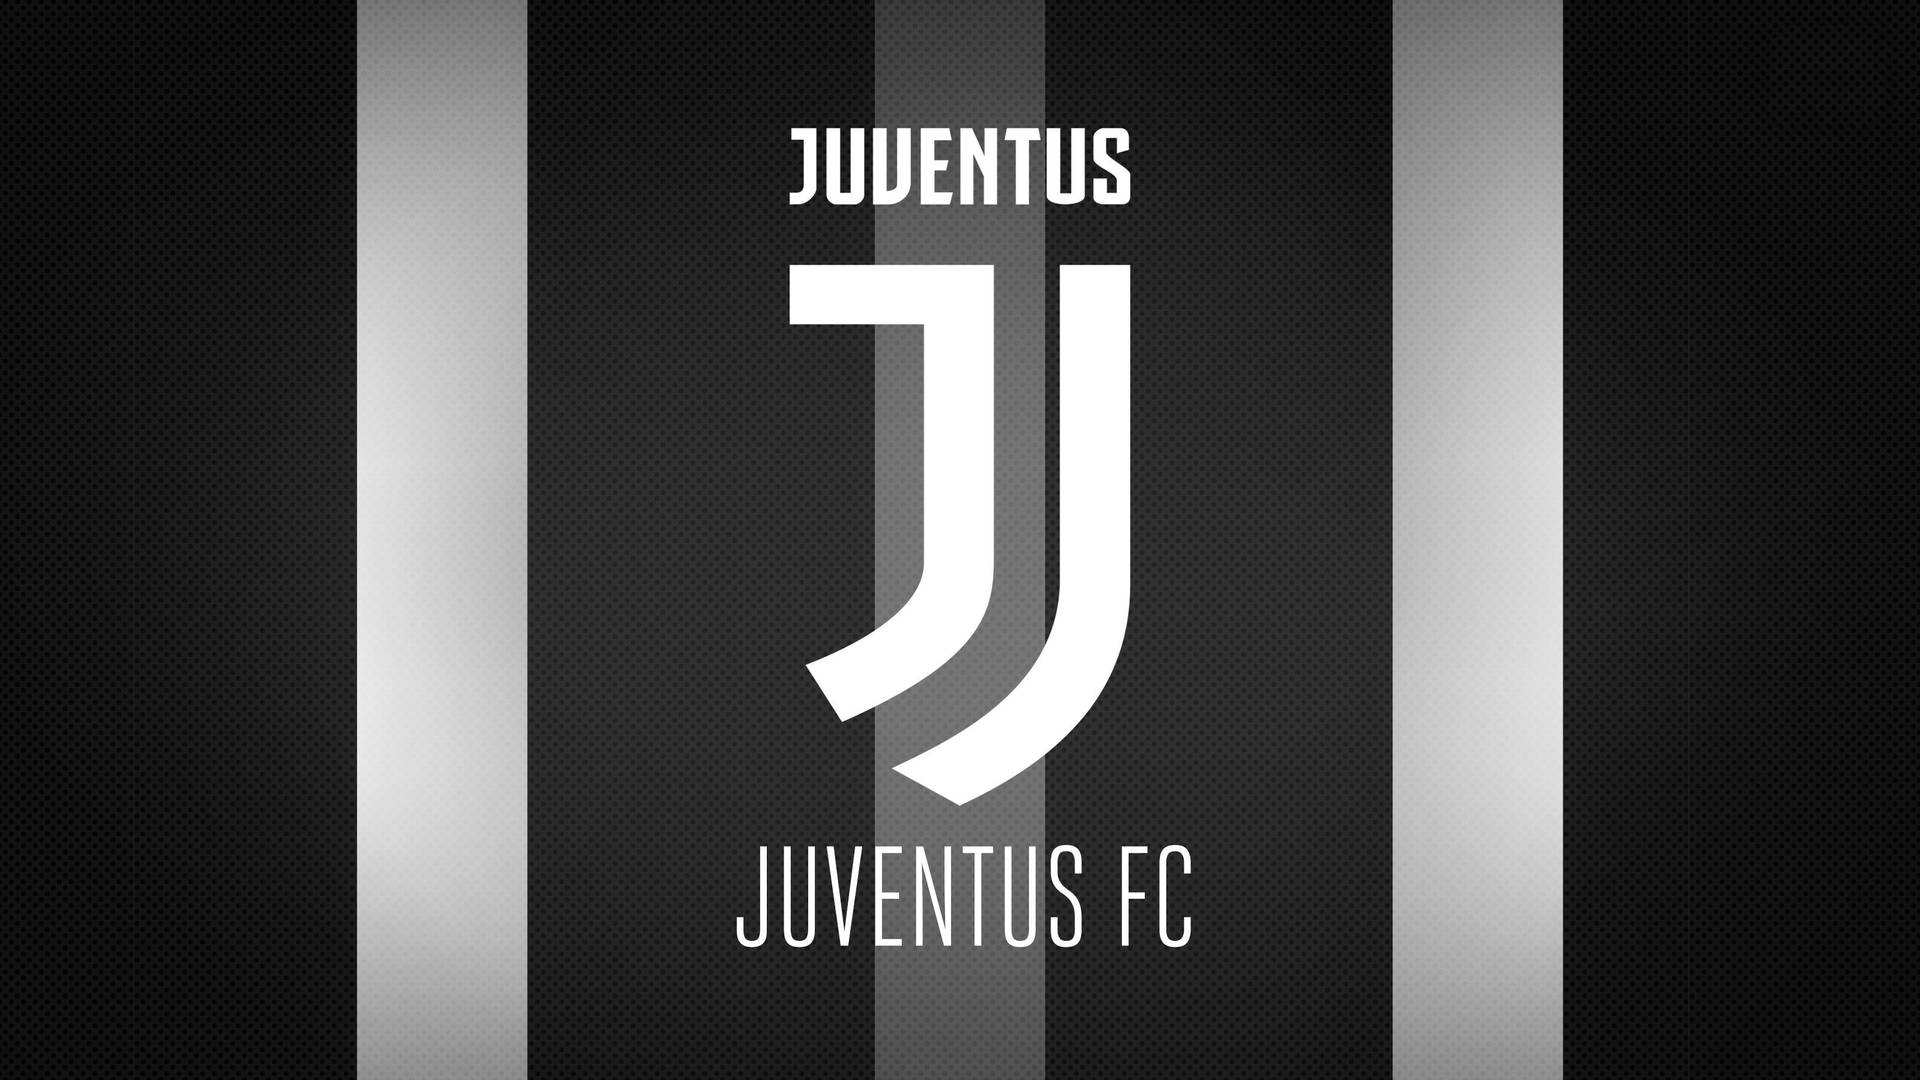 Papelde Parede Estiloso Do Logotipo Do Juventus F.c. Papel de Parede